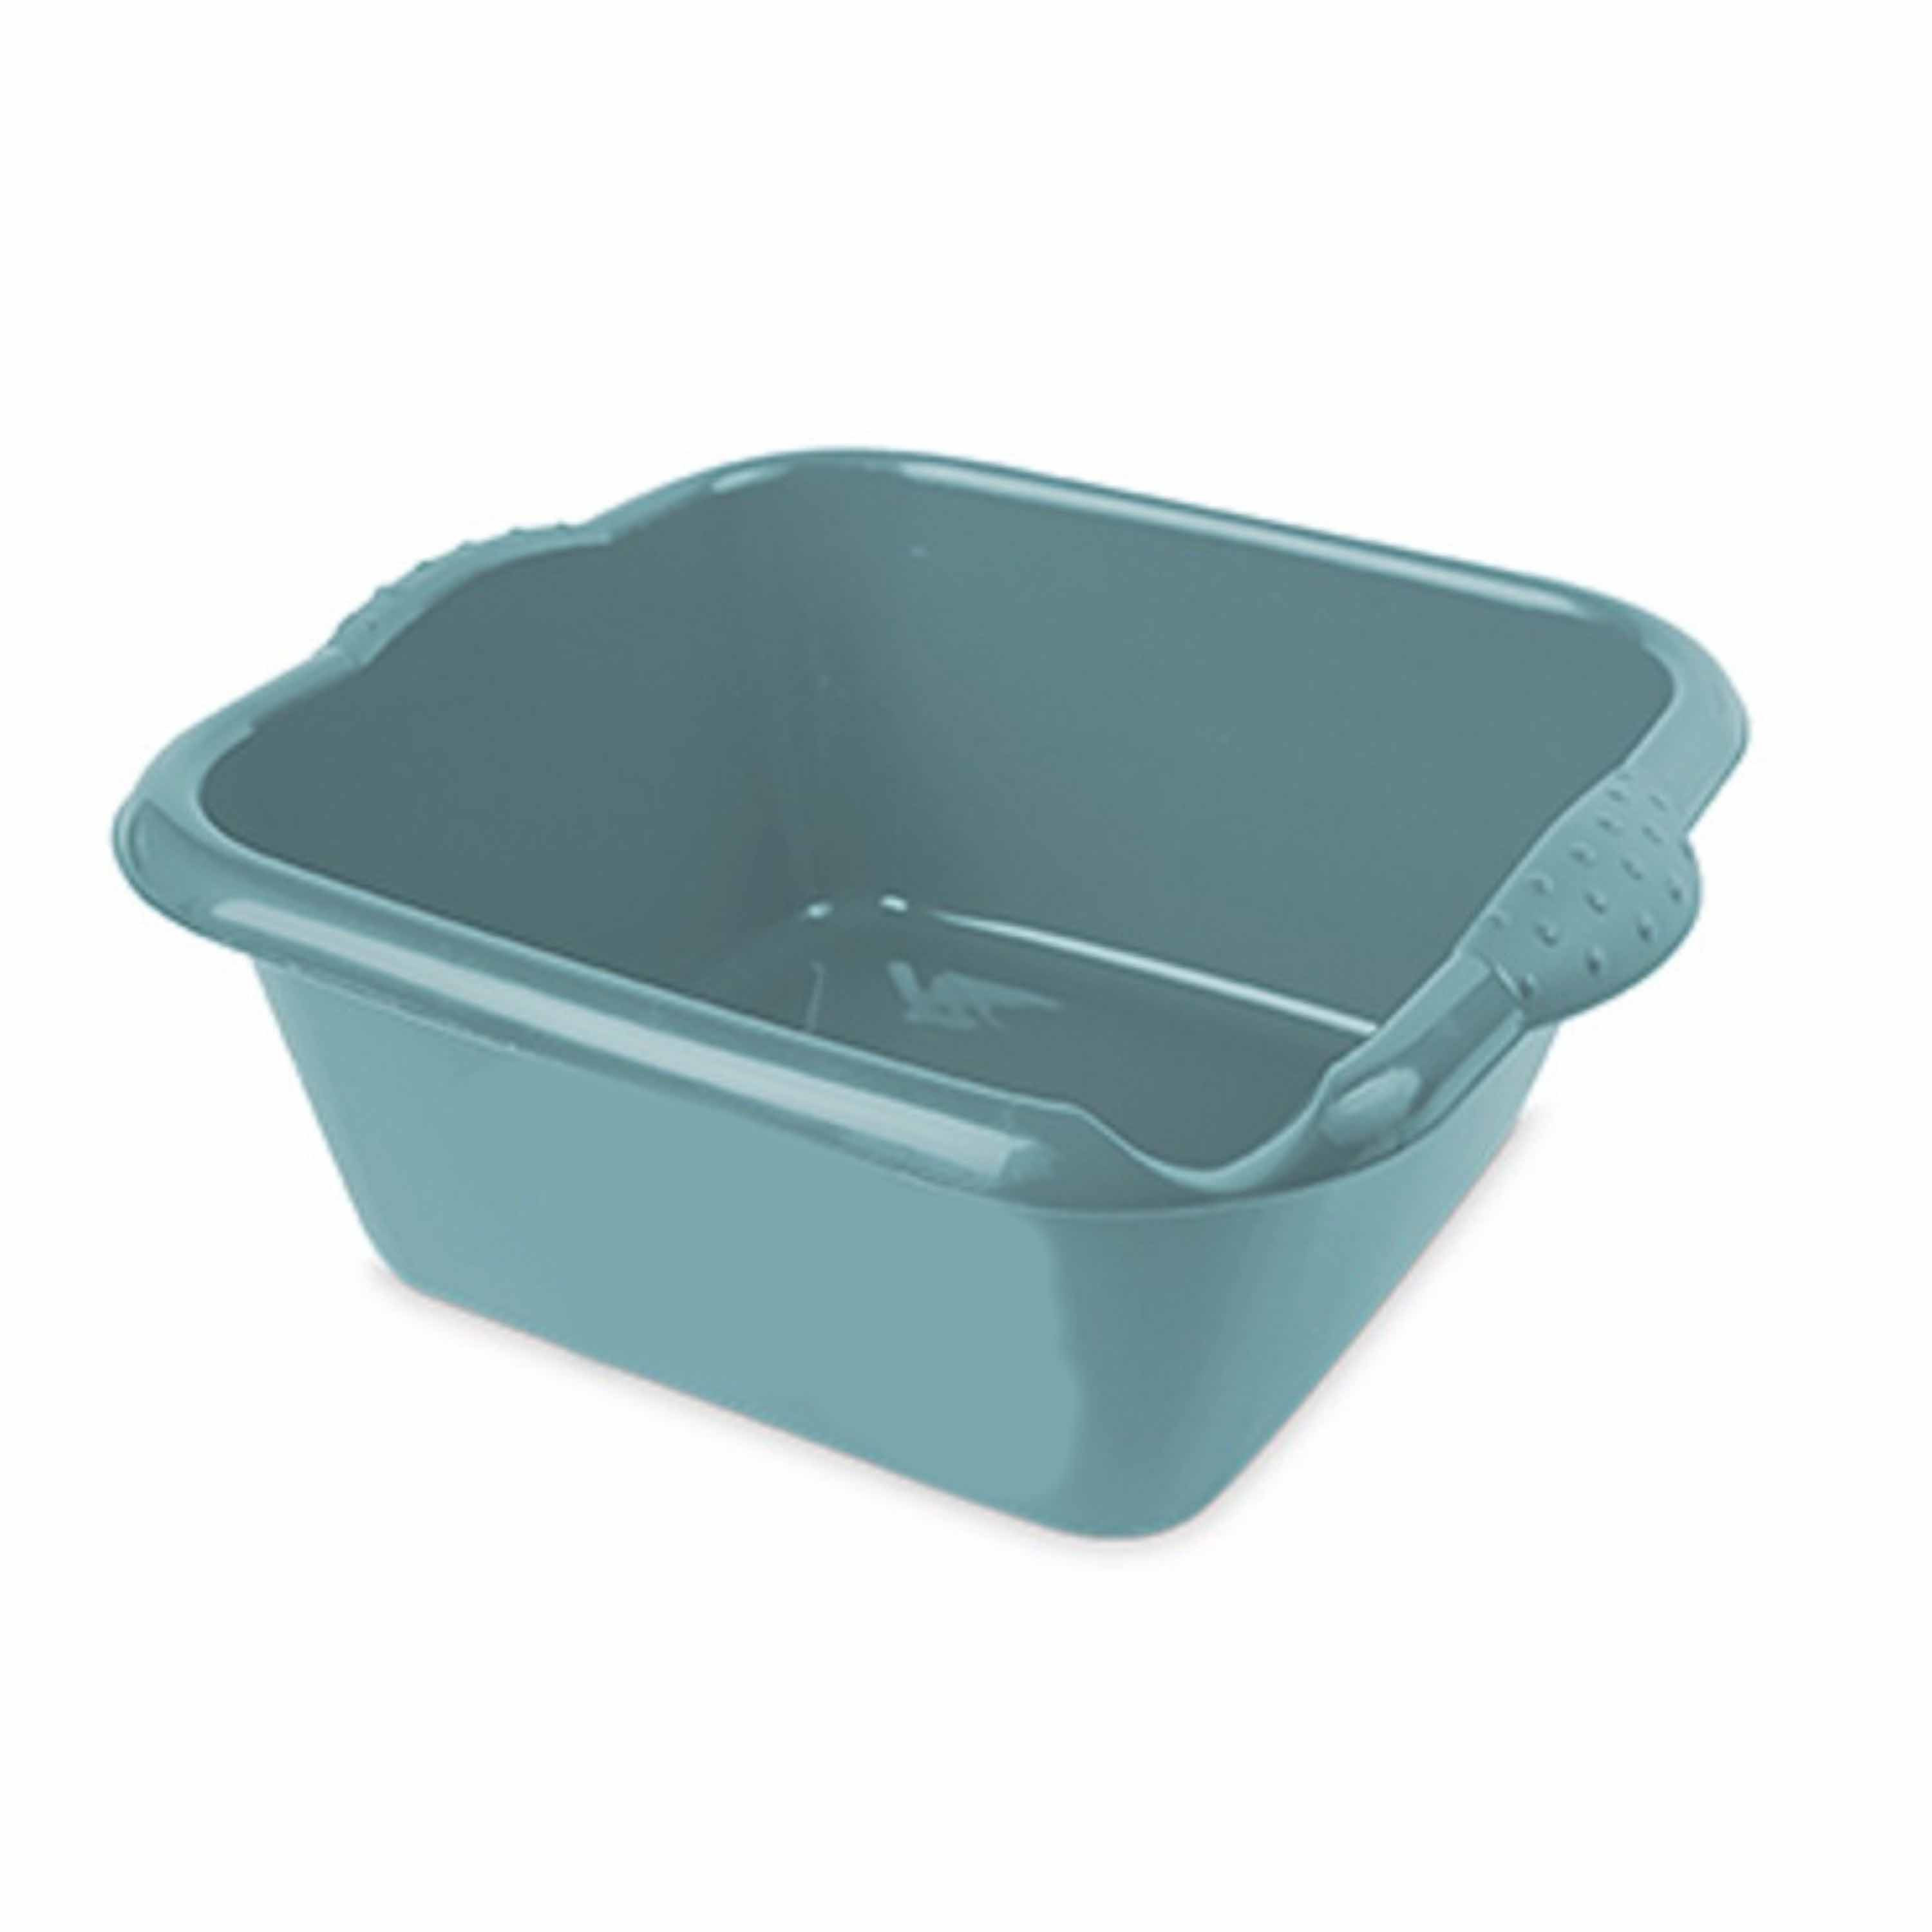 Turquoise blauwe afwasbak-afwasteil vierkant 15 liter 42 cm